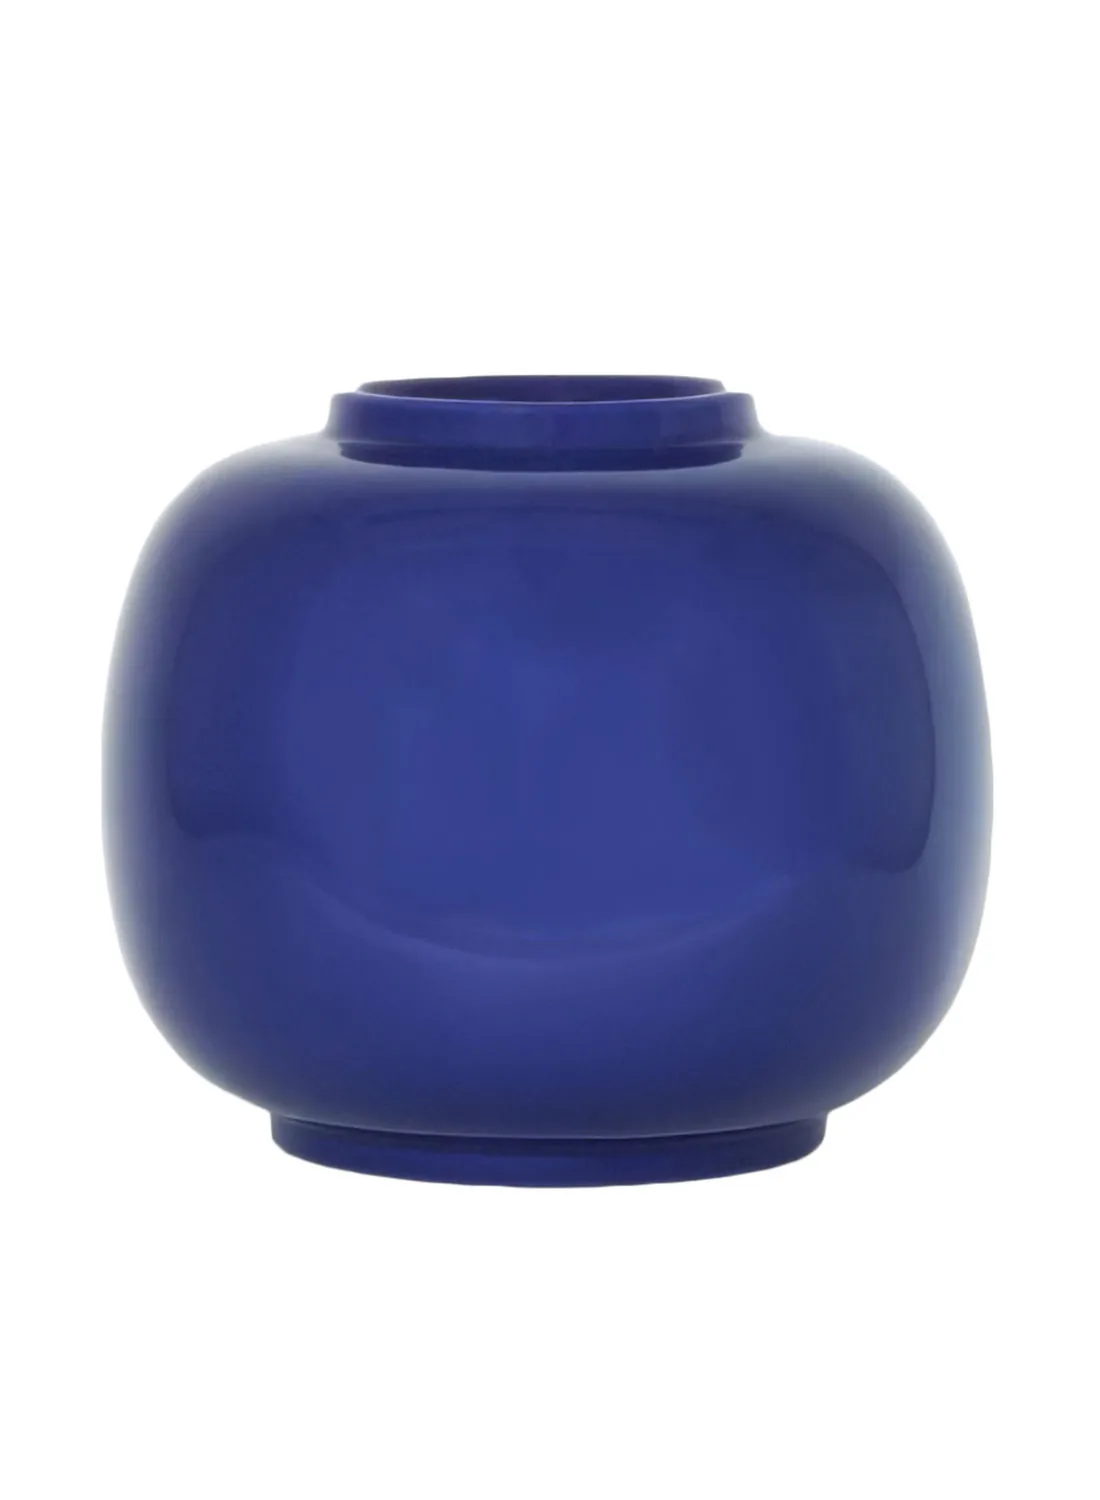 مزهرية خزفية كلاسيكية ذات شكل فني مذهل ، مواد ذات جودة فاخرة فريدة من نوعها لمنزل أنيق مثالي N13-011 أزرق 26.5 × 23.5 سم